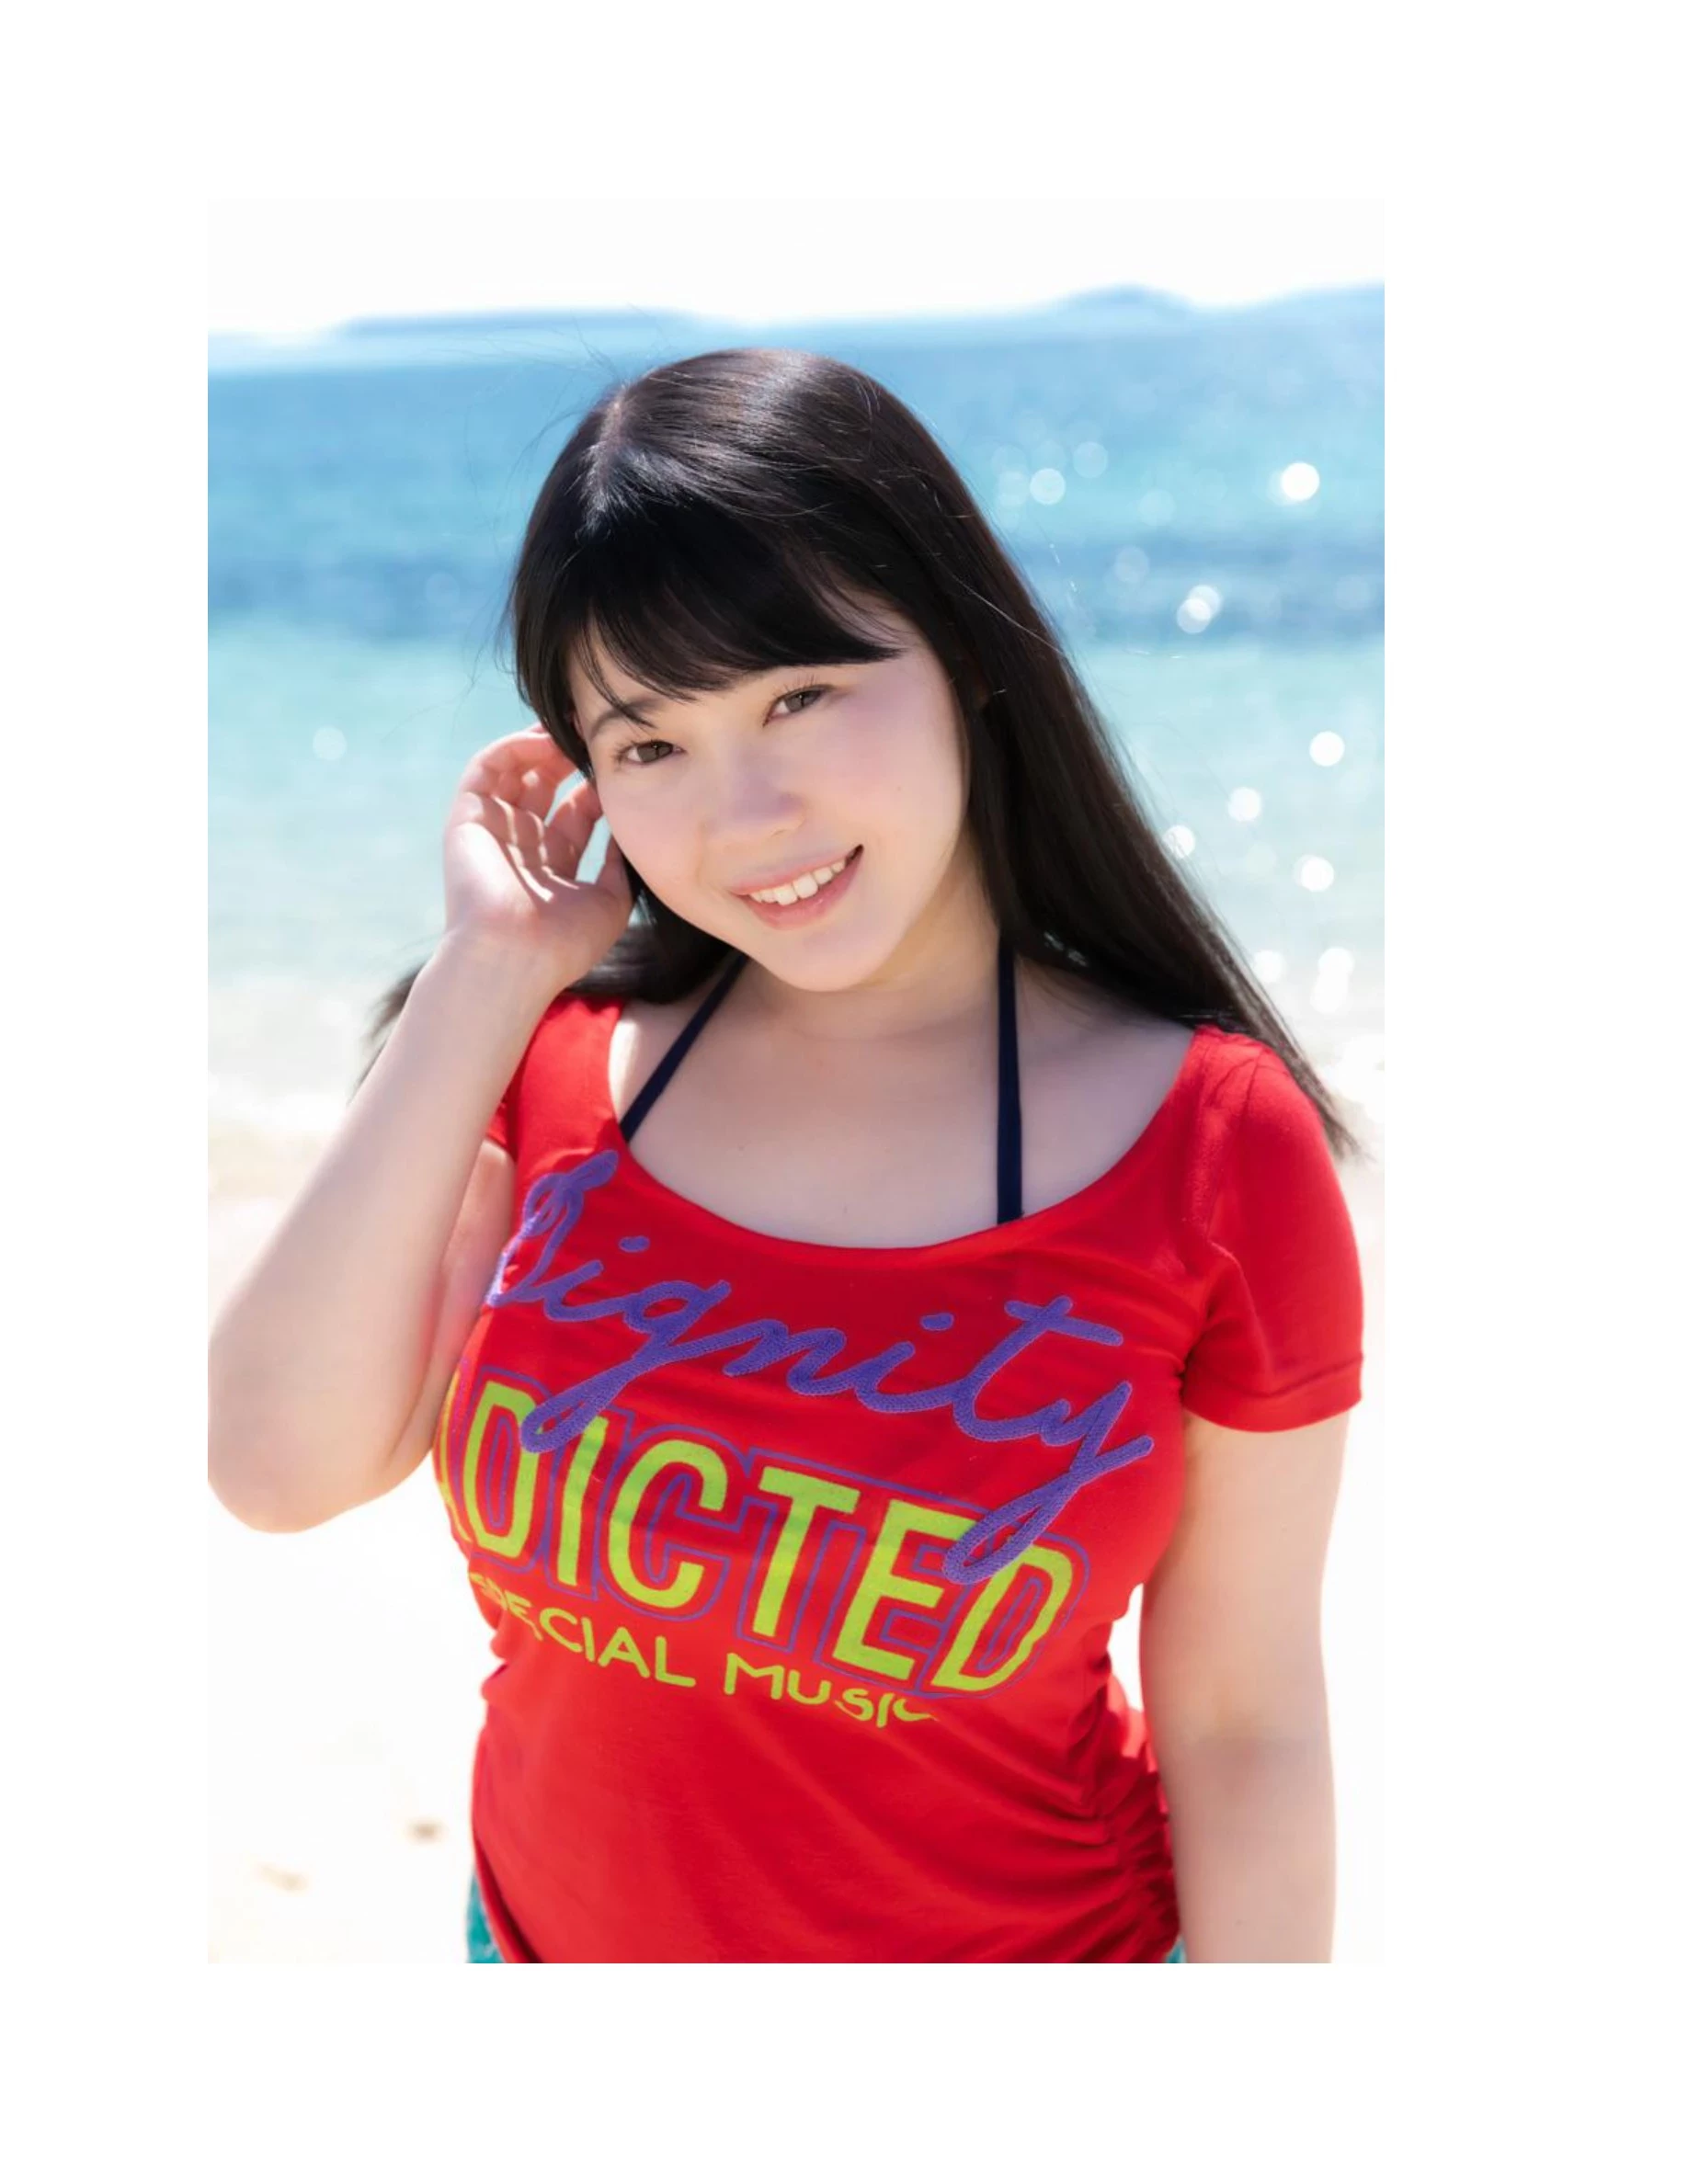 伊川愛梨 卒業旅行 夏 寫真集 J罩杯偶像美少女傳説-329